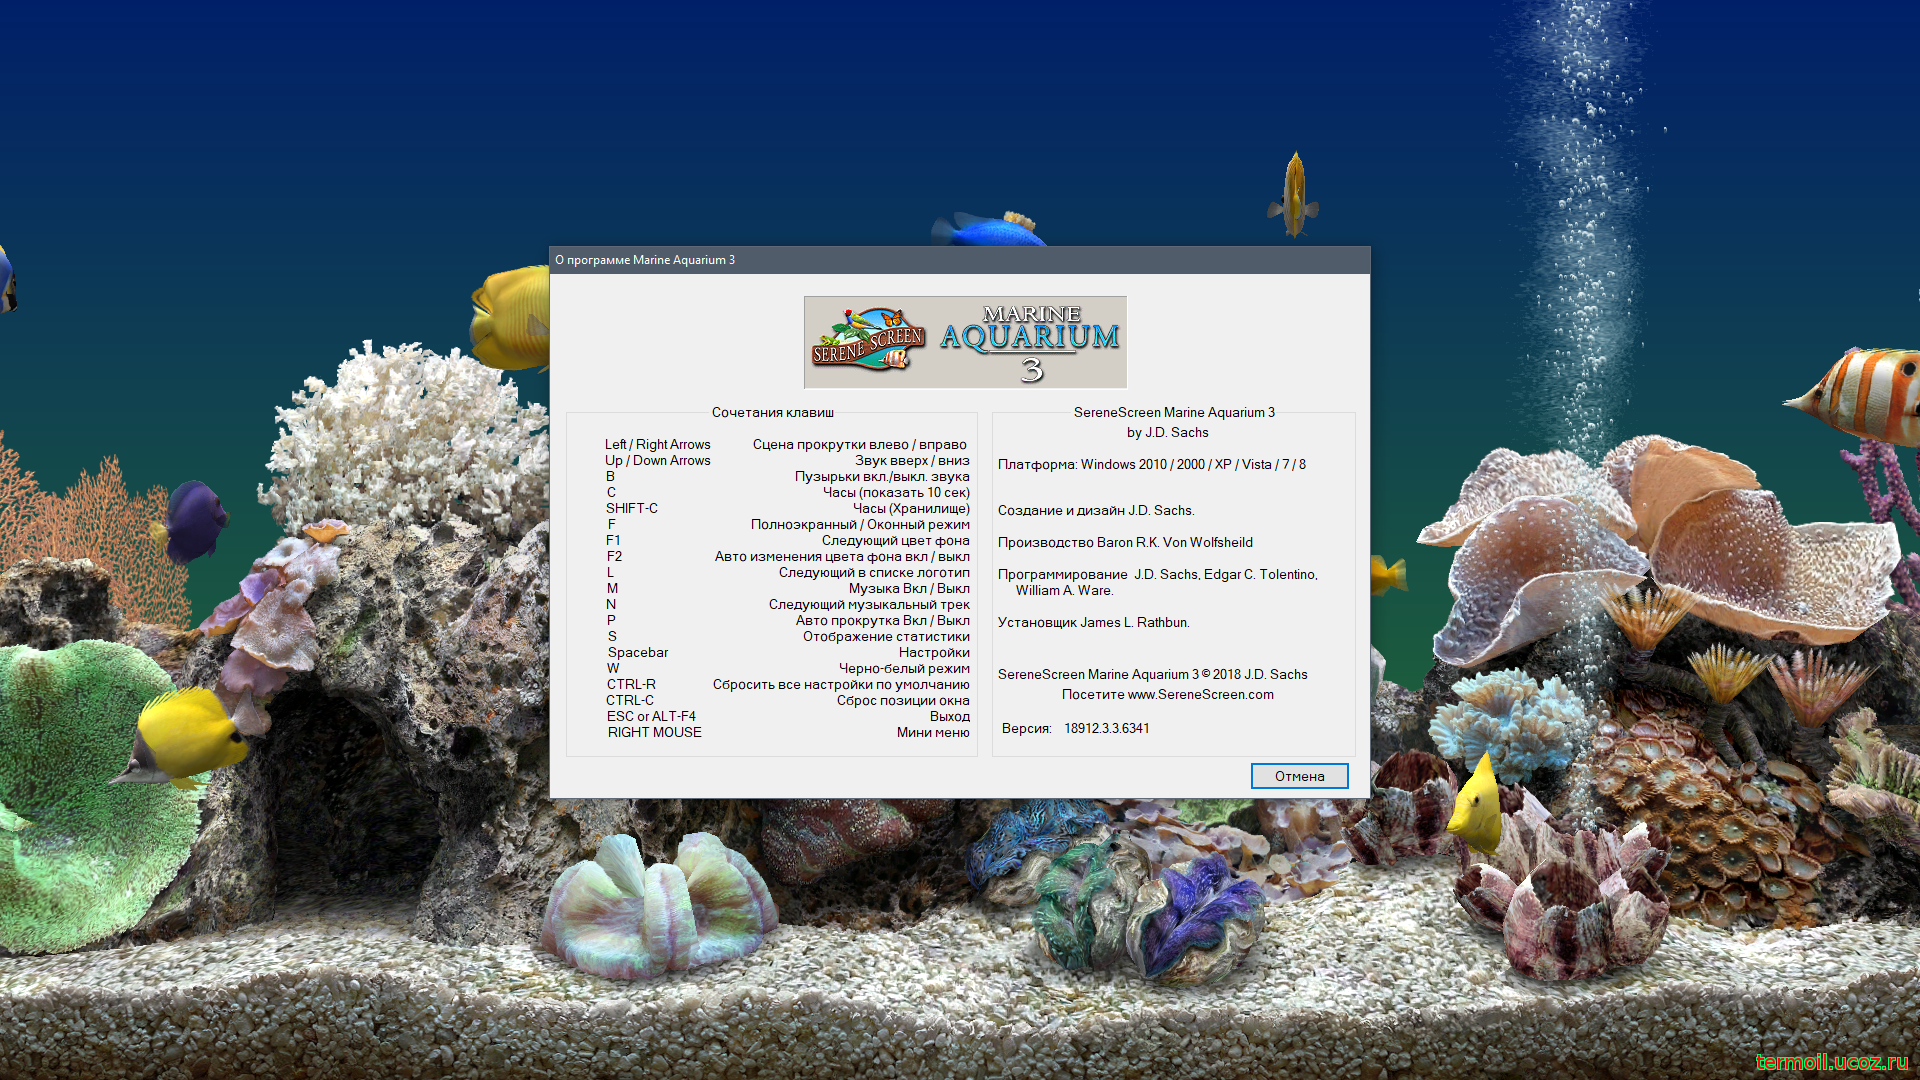 Аквариум на рабочий стол. Заставка Marine Aquarium 3. 3d аквариум на рабочий стол. Скринсейвер аквариум для Windows 10.